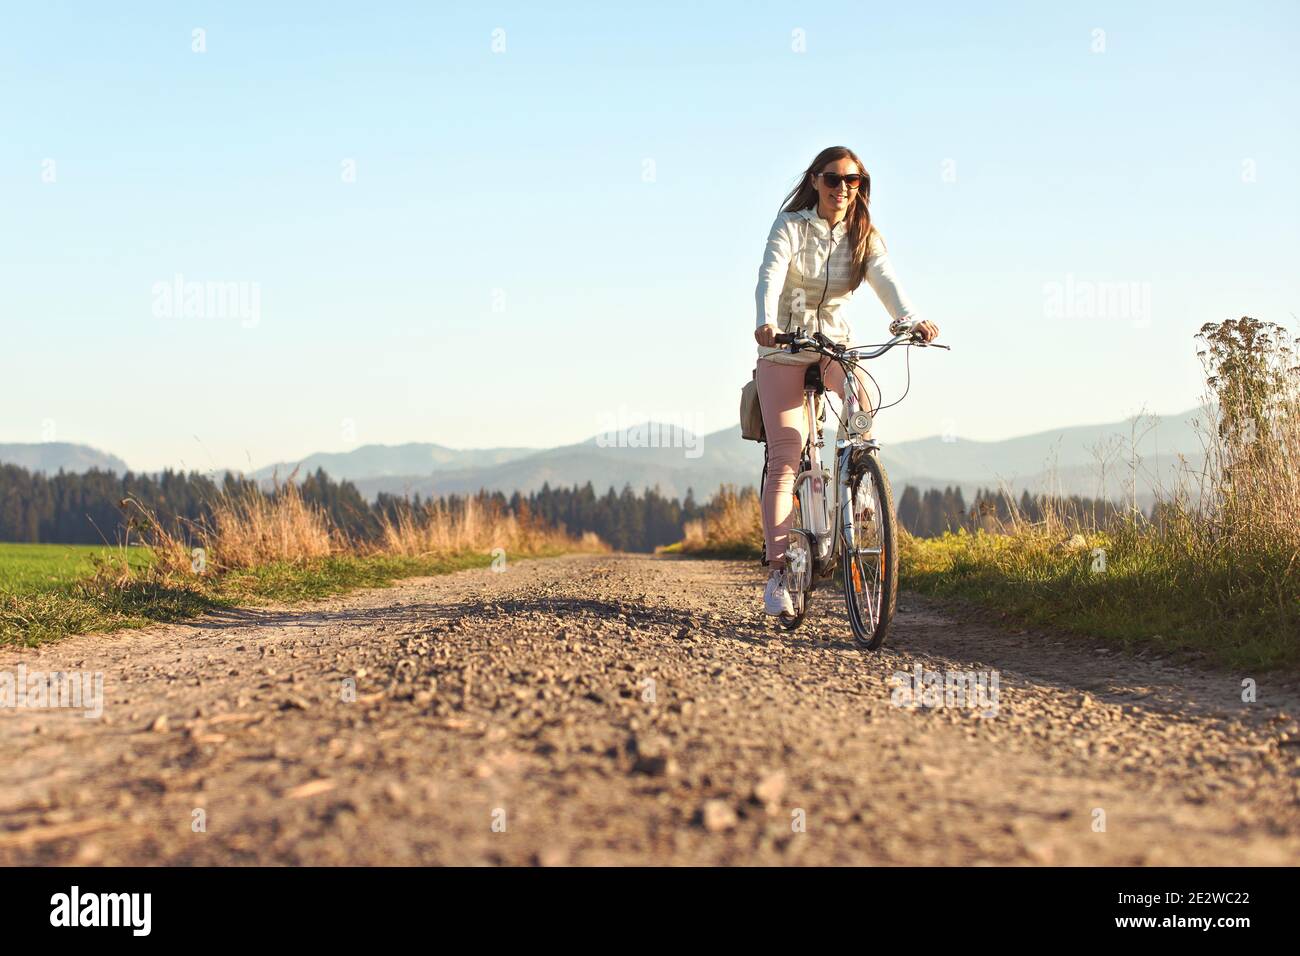 Junge Frau mit langen Haaren mit Sonnenbrille Fahrrad fahren auf staubigen Landstraße, Nachmittag Sonne beleuchtet Land Hintergrund Stockfoto